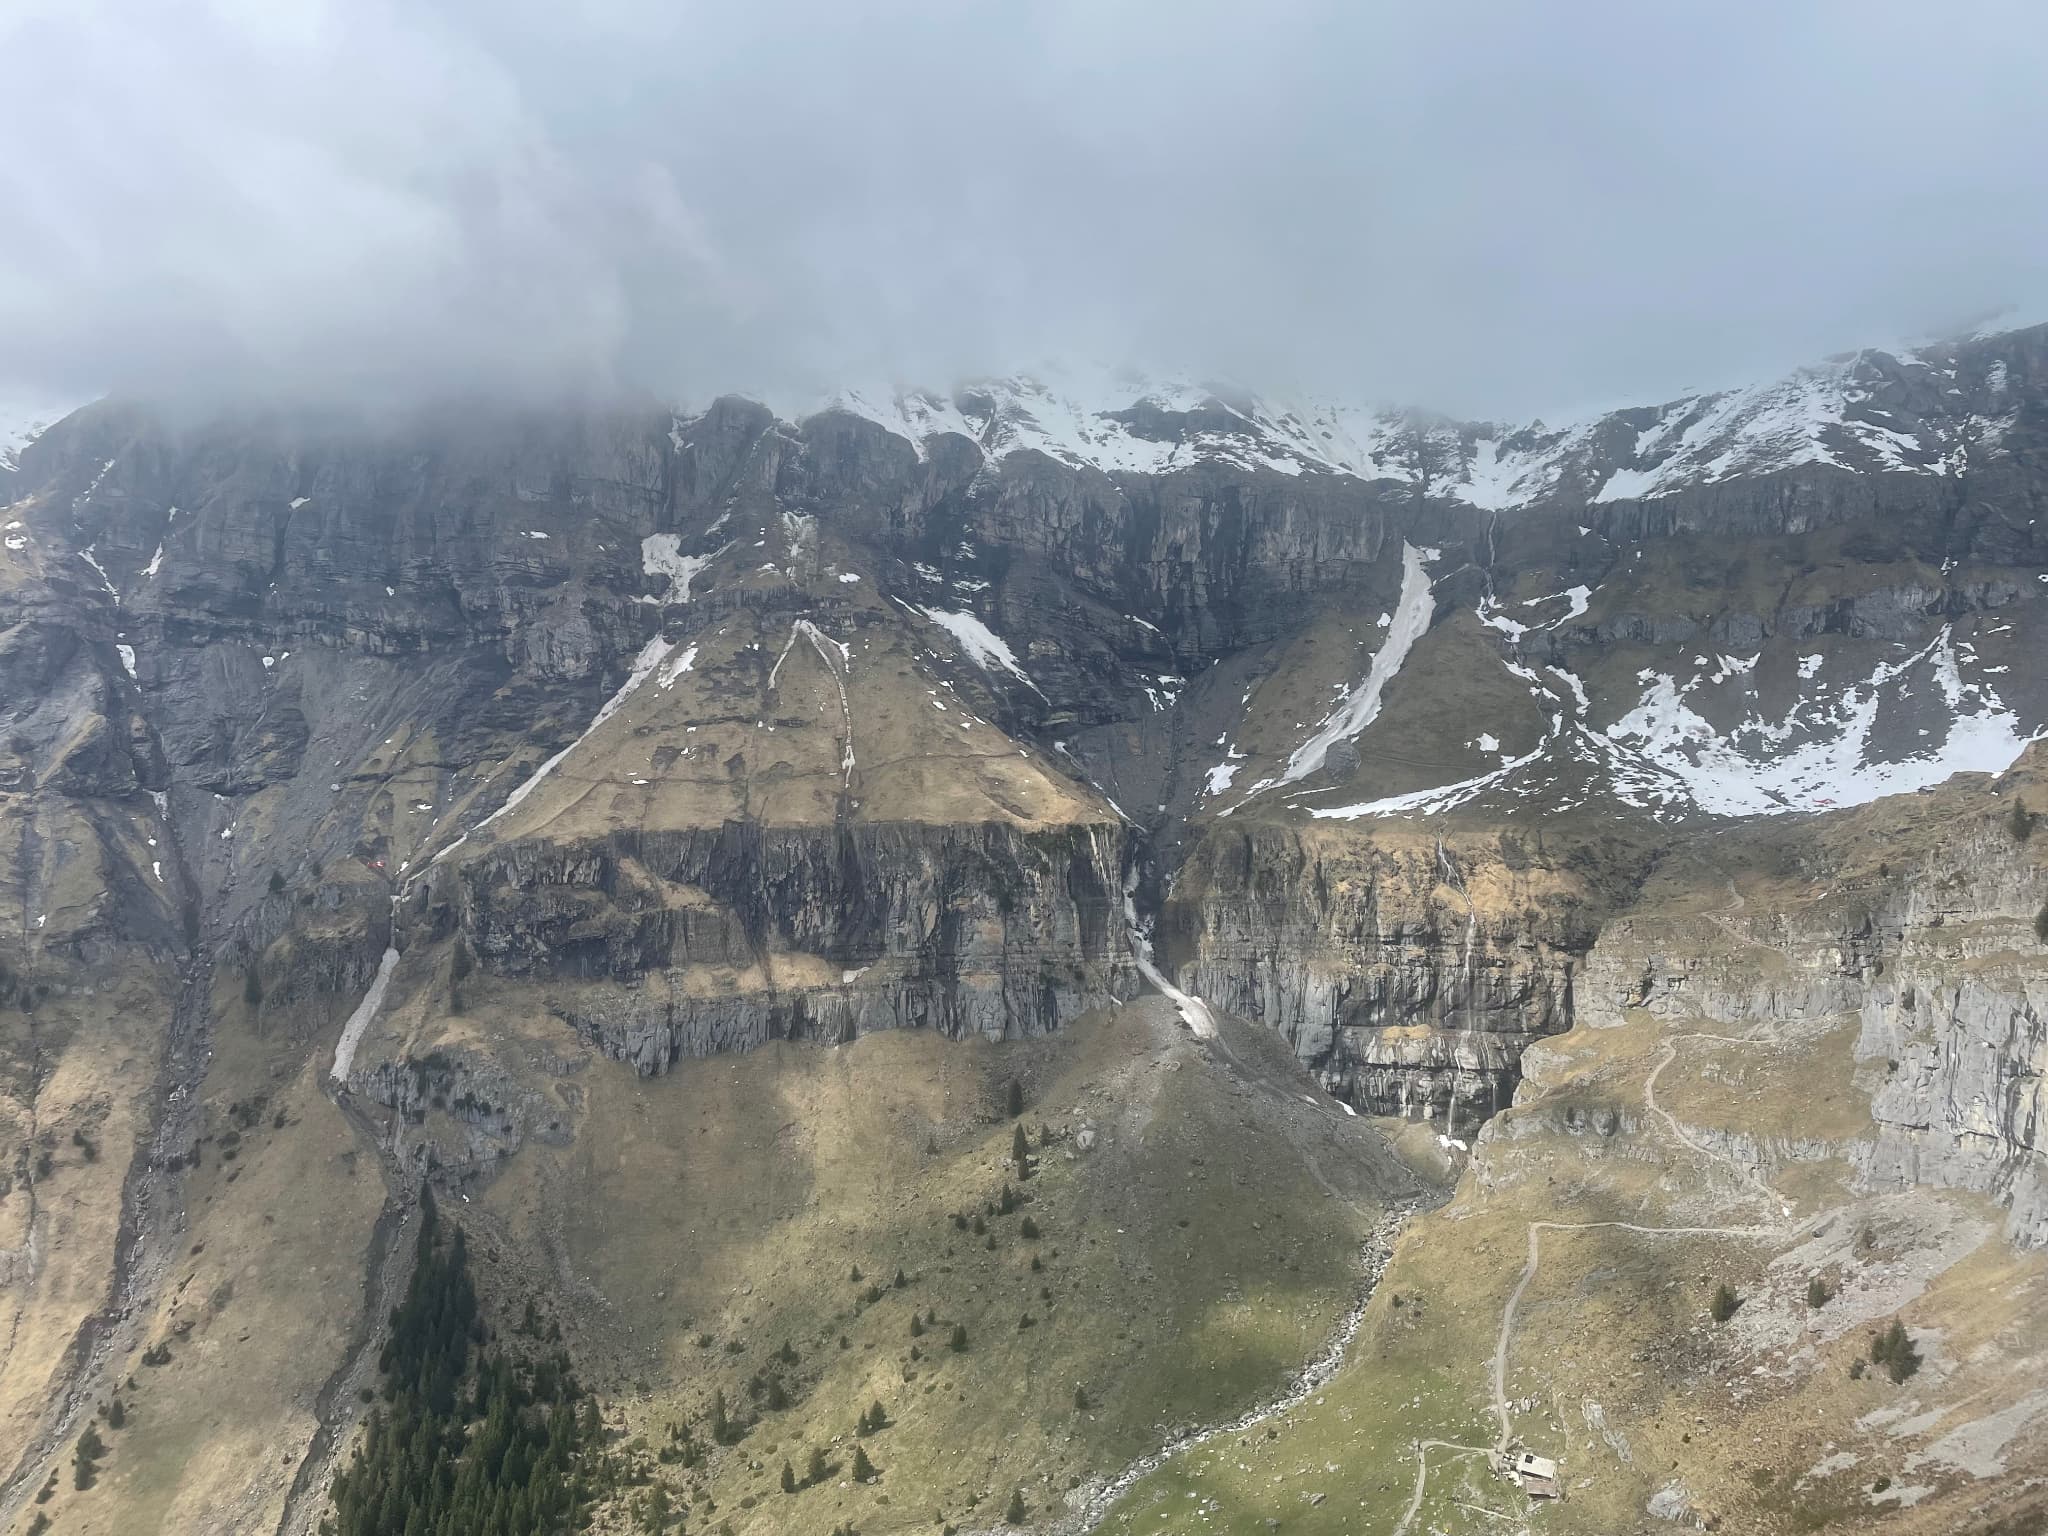 suisse: un français de 32 ans tué dans une avalanche, quatre autre personnes blessées